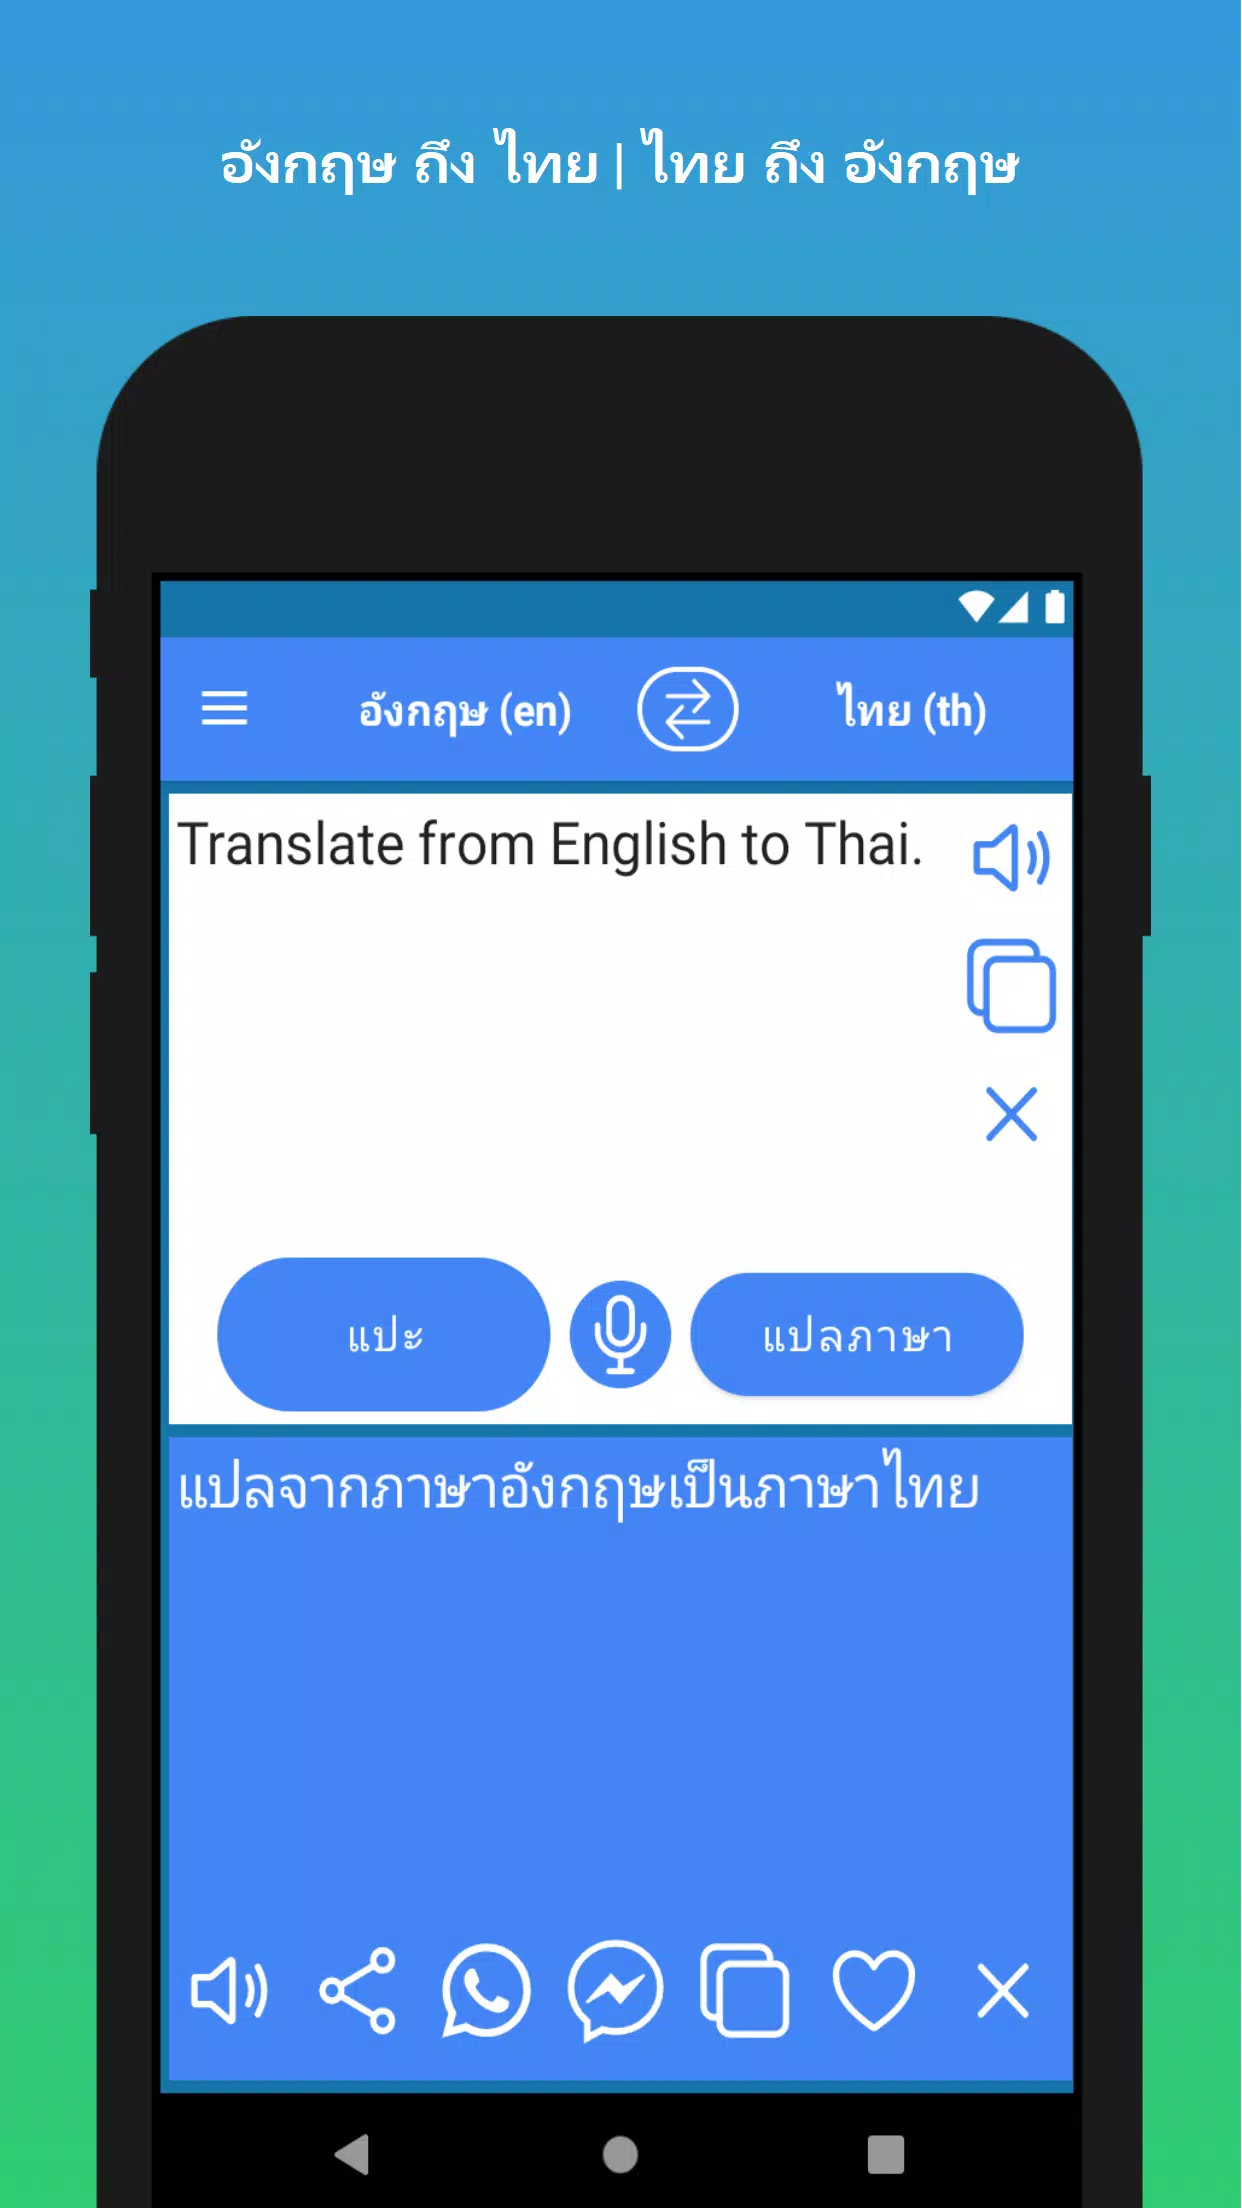 แอปภาษาไทย: วิธีใช้แอปเพื่อเรียนรู้ภาษาไทย - Thocahouse.Vn